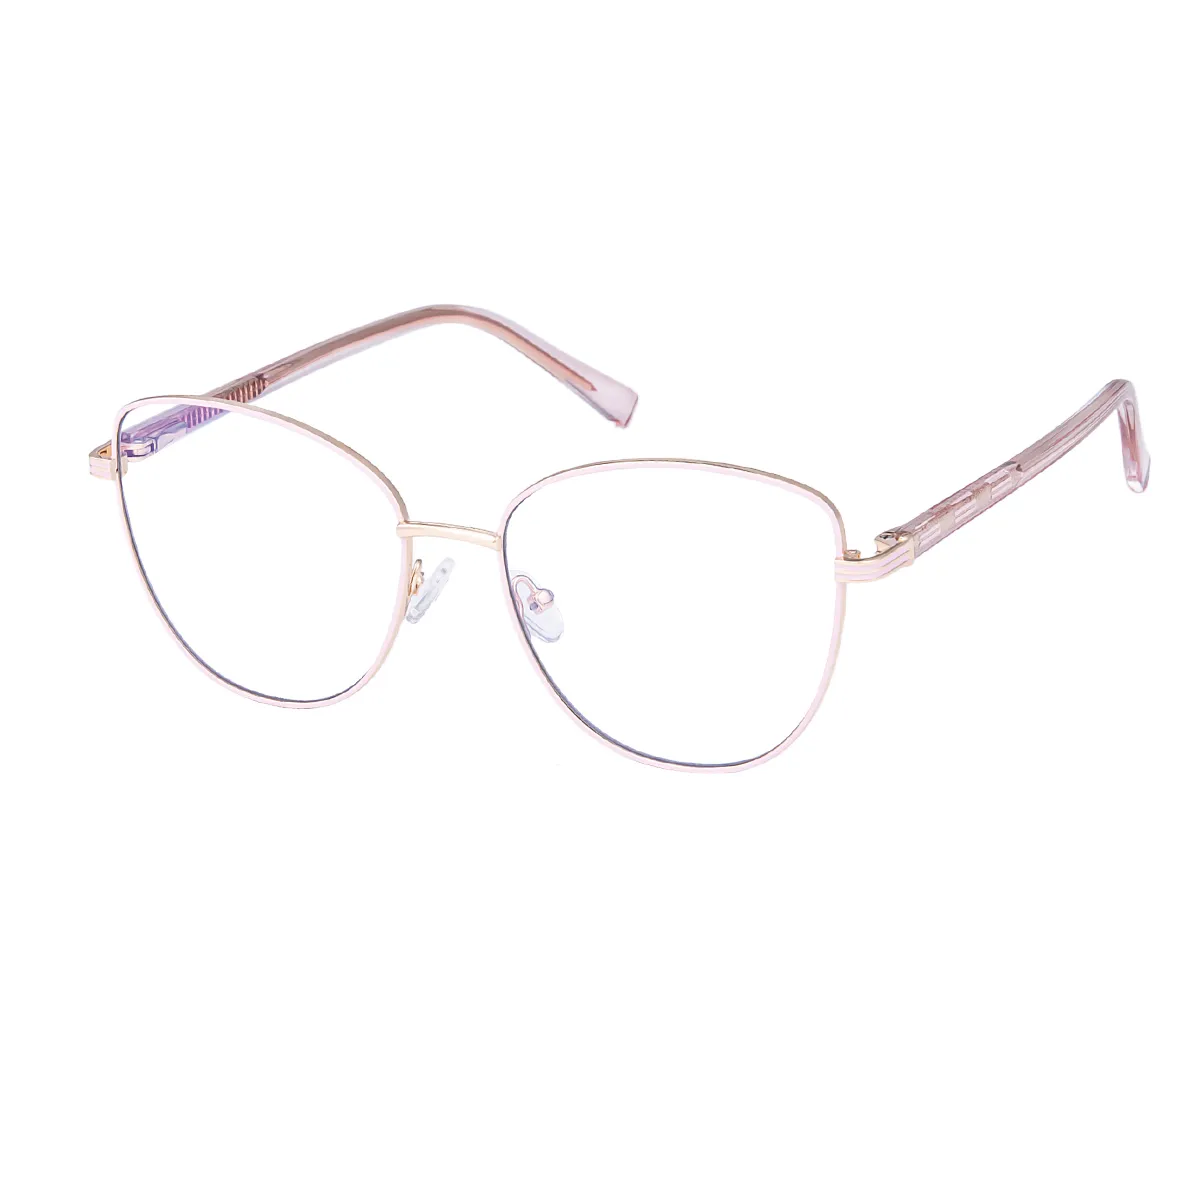 Evangeline - Square Gold Glasses for Women